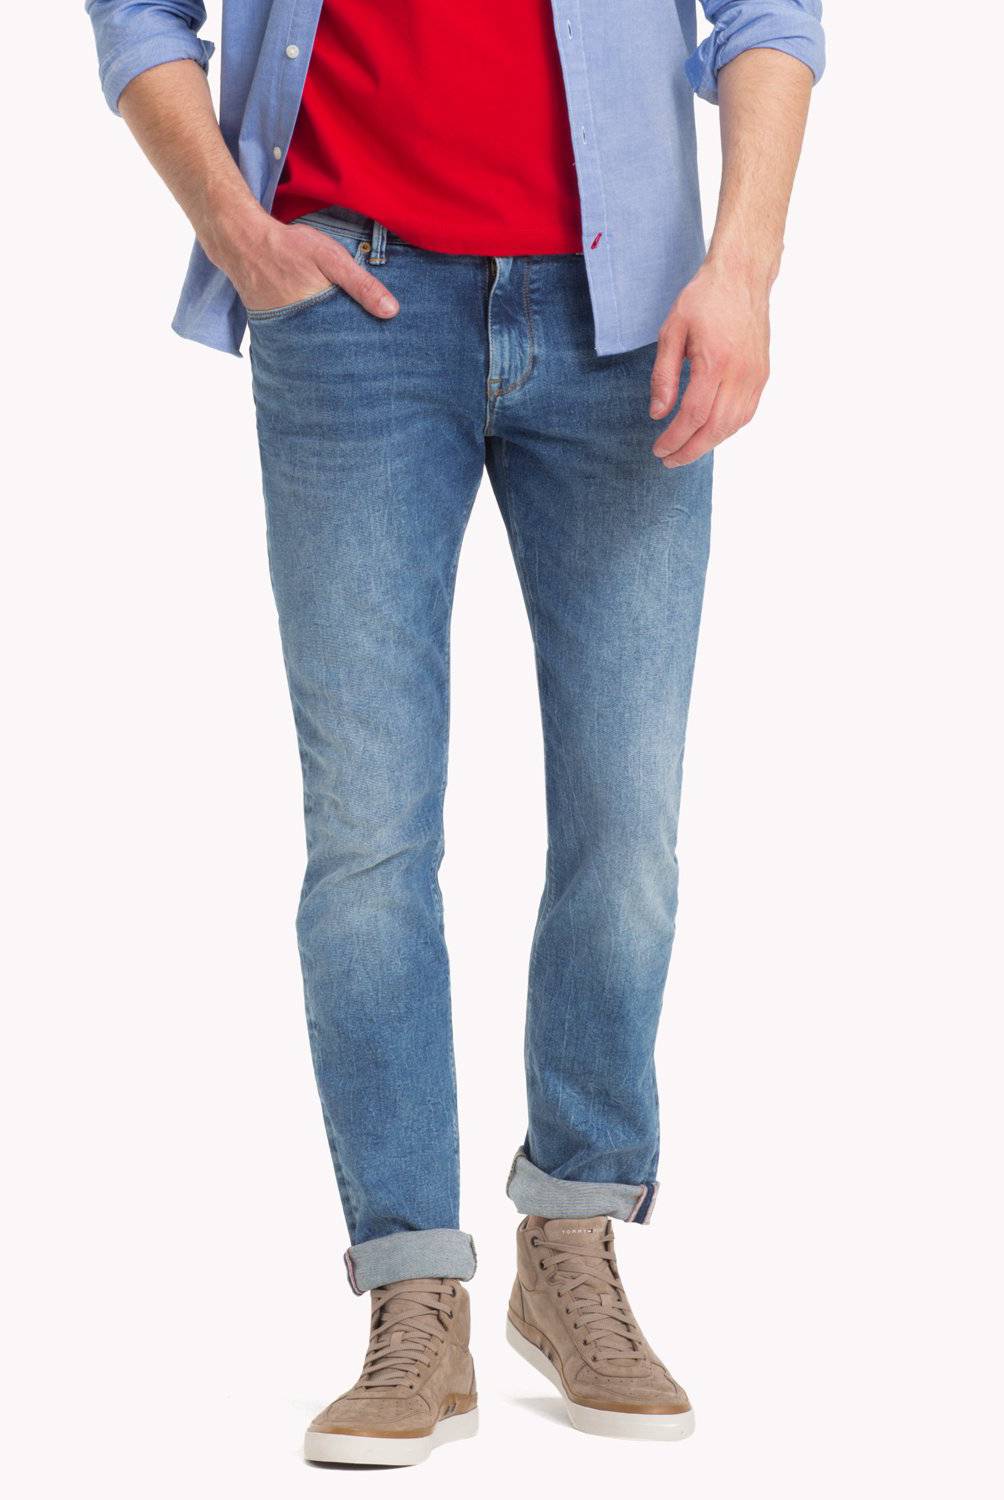 TOMMY HILFIGER - Jeans de Corte Slim